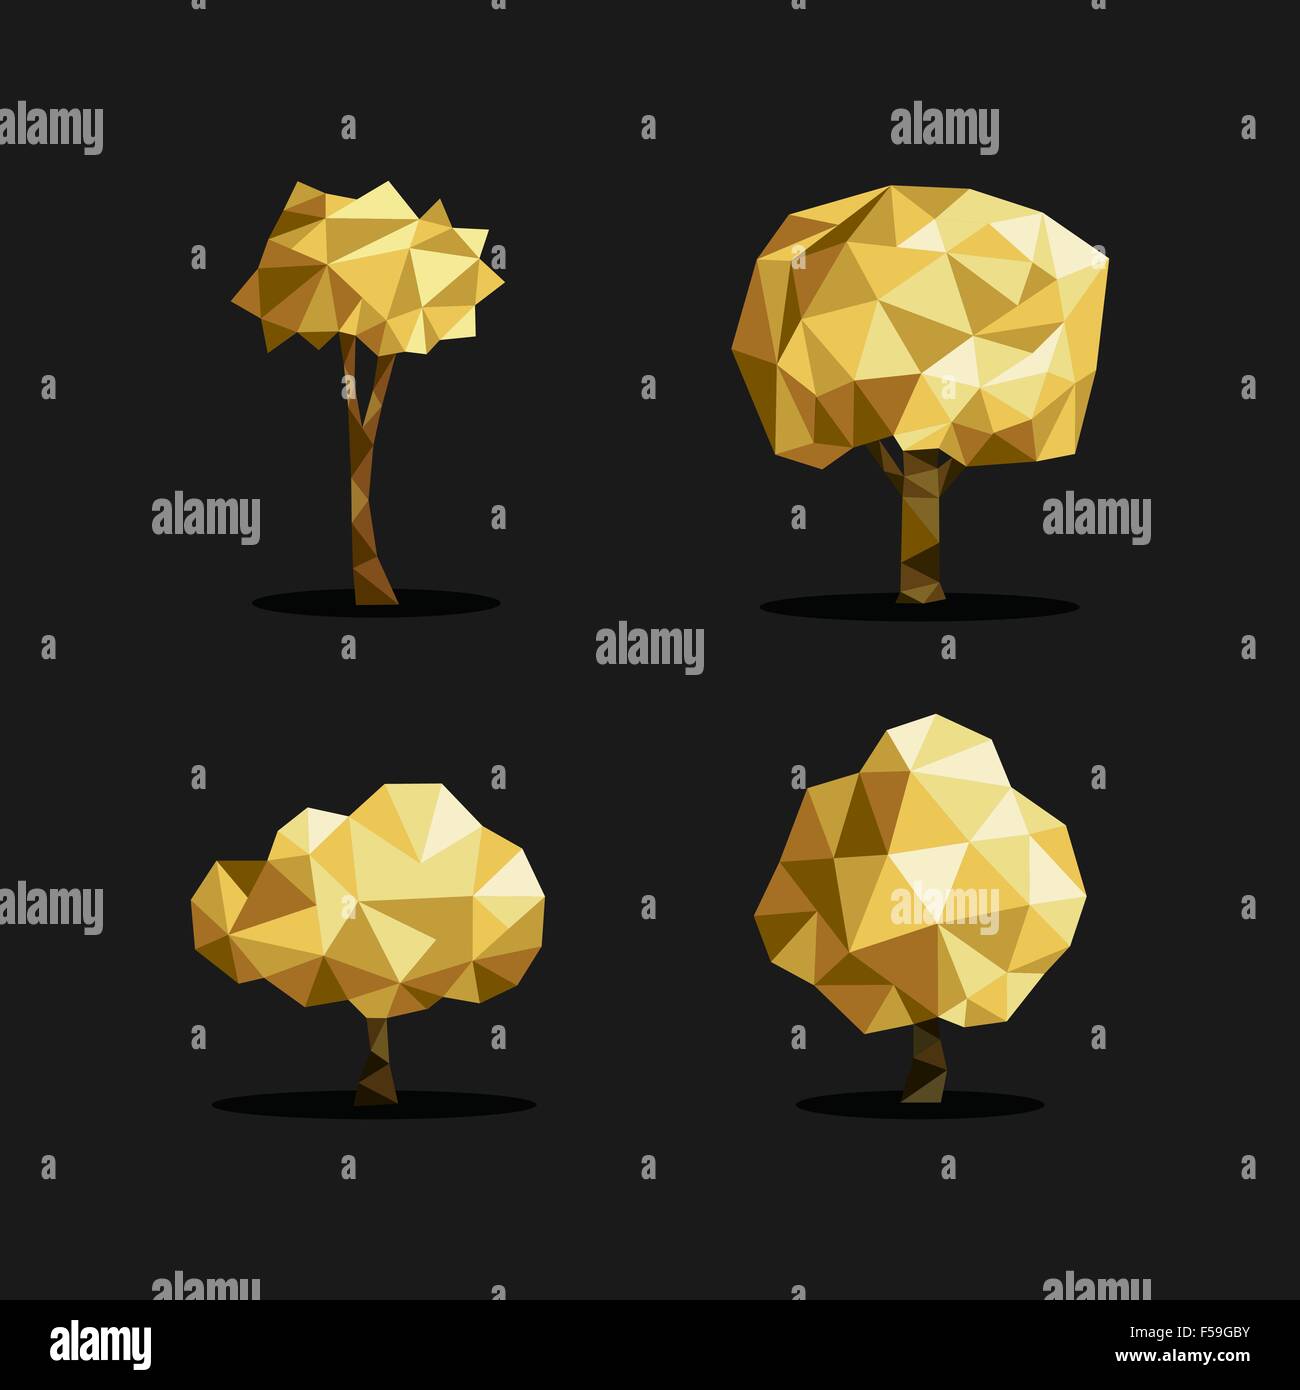 Satz von Polygon Dreieck low-Poly Baum Abbildungen in gold metallic-Farbe. Ideal für Web-Symbol, Broschüre oder Botanik Buch Ökologie Stock Vektor